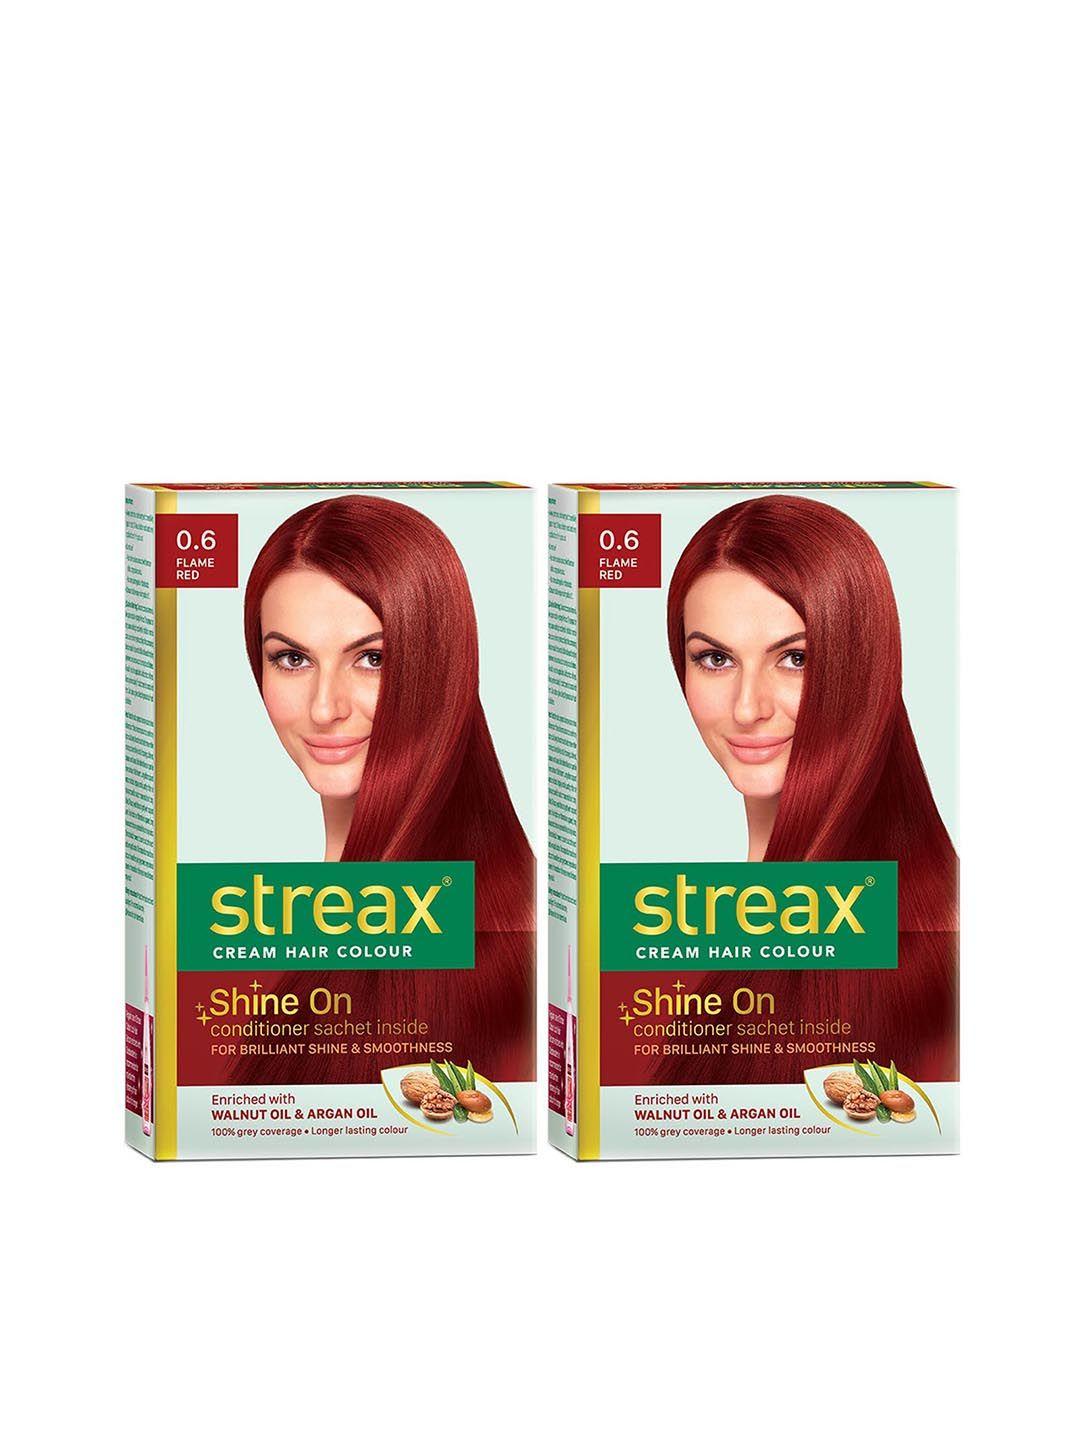 streax set of 2 cream hair colour - 0.6 flame red 120 ml each